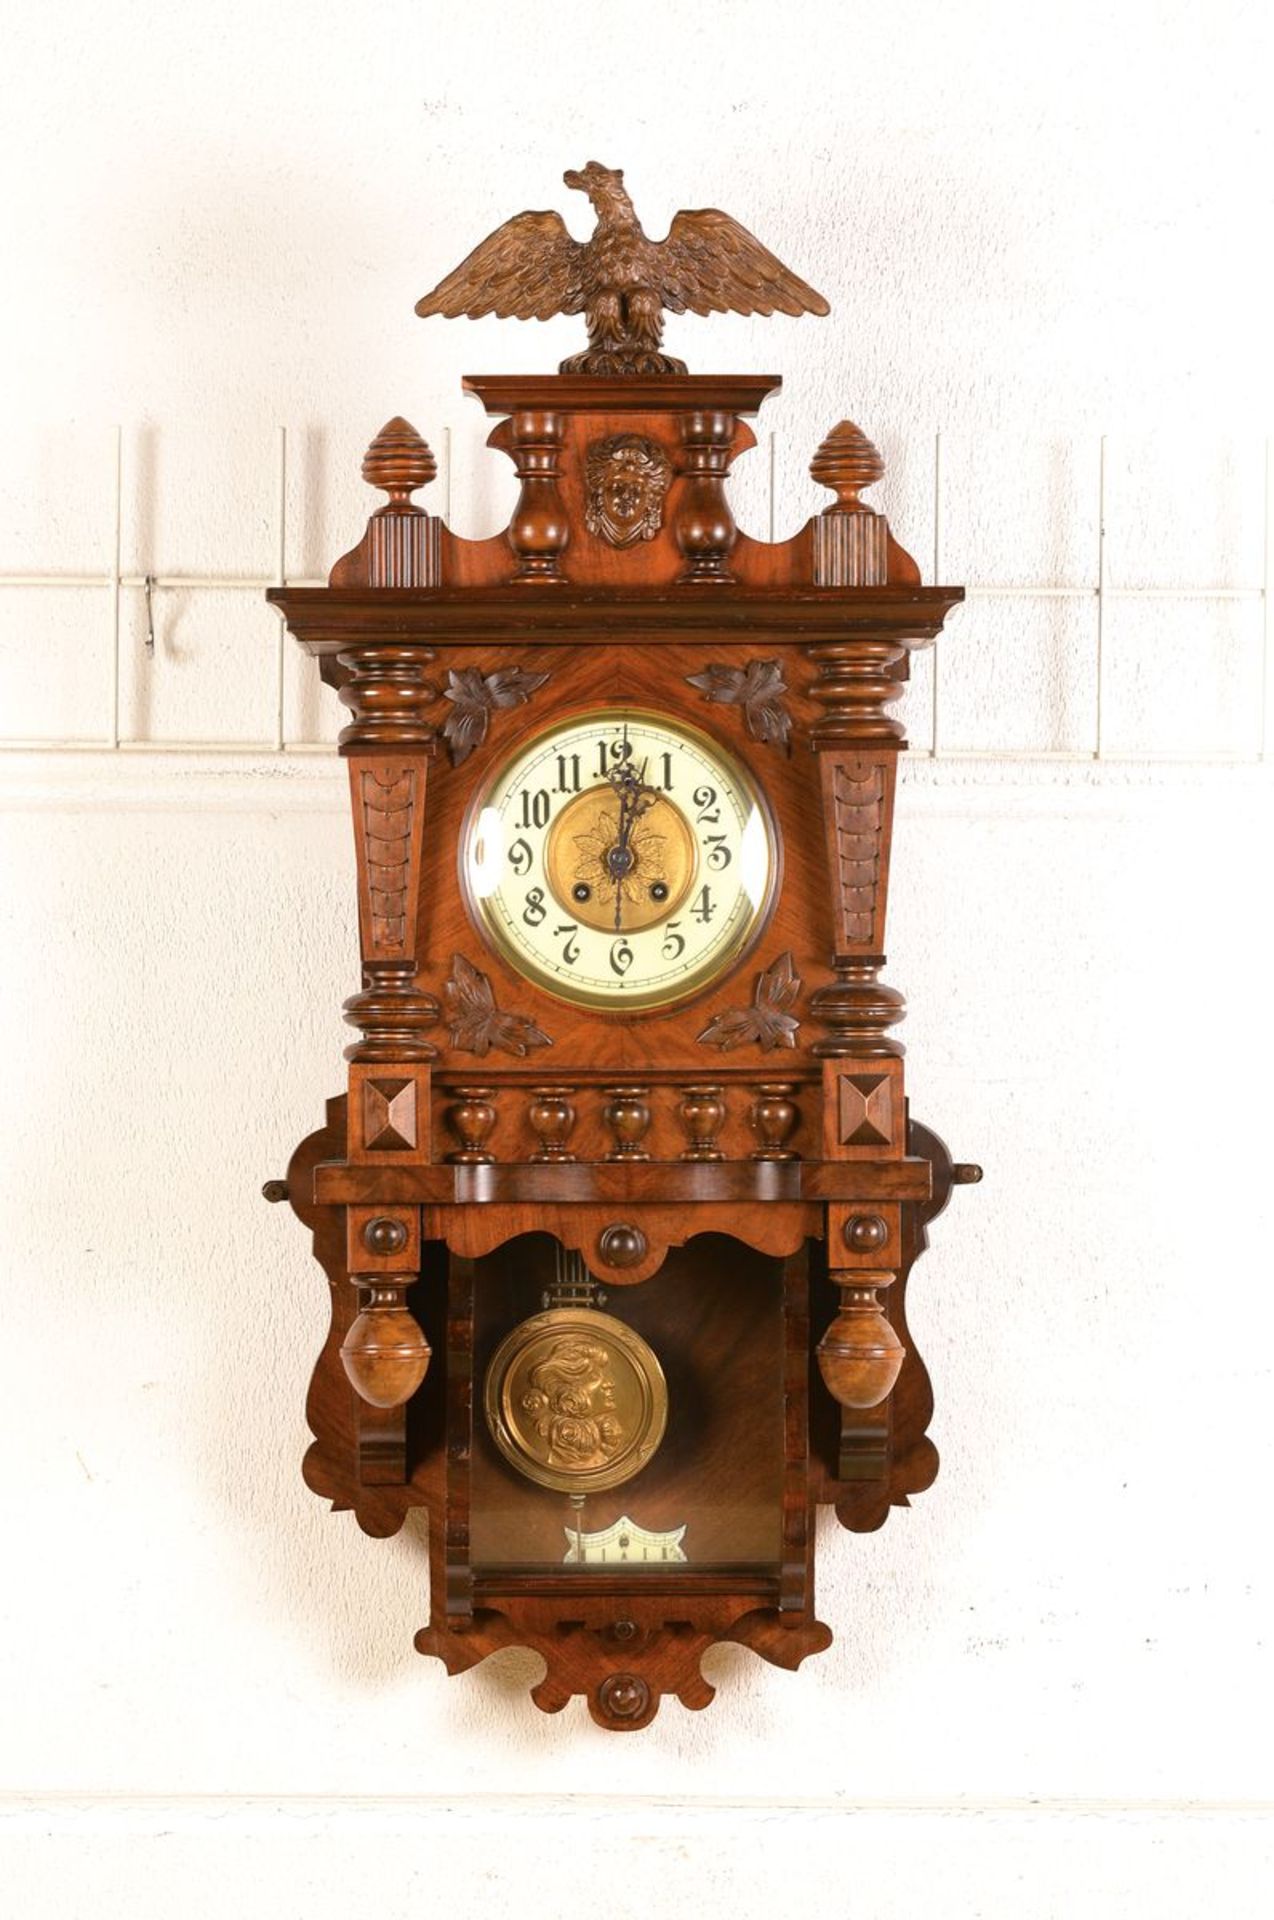 Wanduhr, sog. Freischwinger, Uhrenmanufaktur Mathias Bäuerle, St. Georgen um 1900, Historismus,